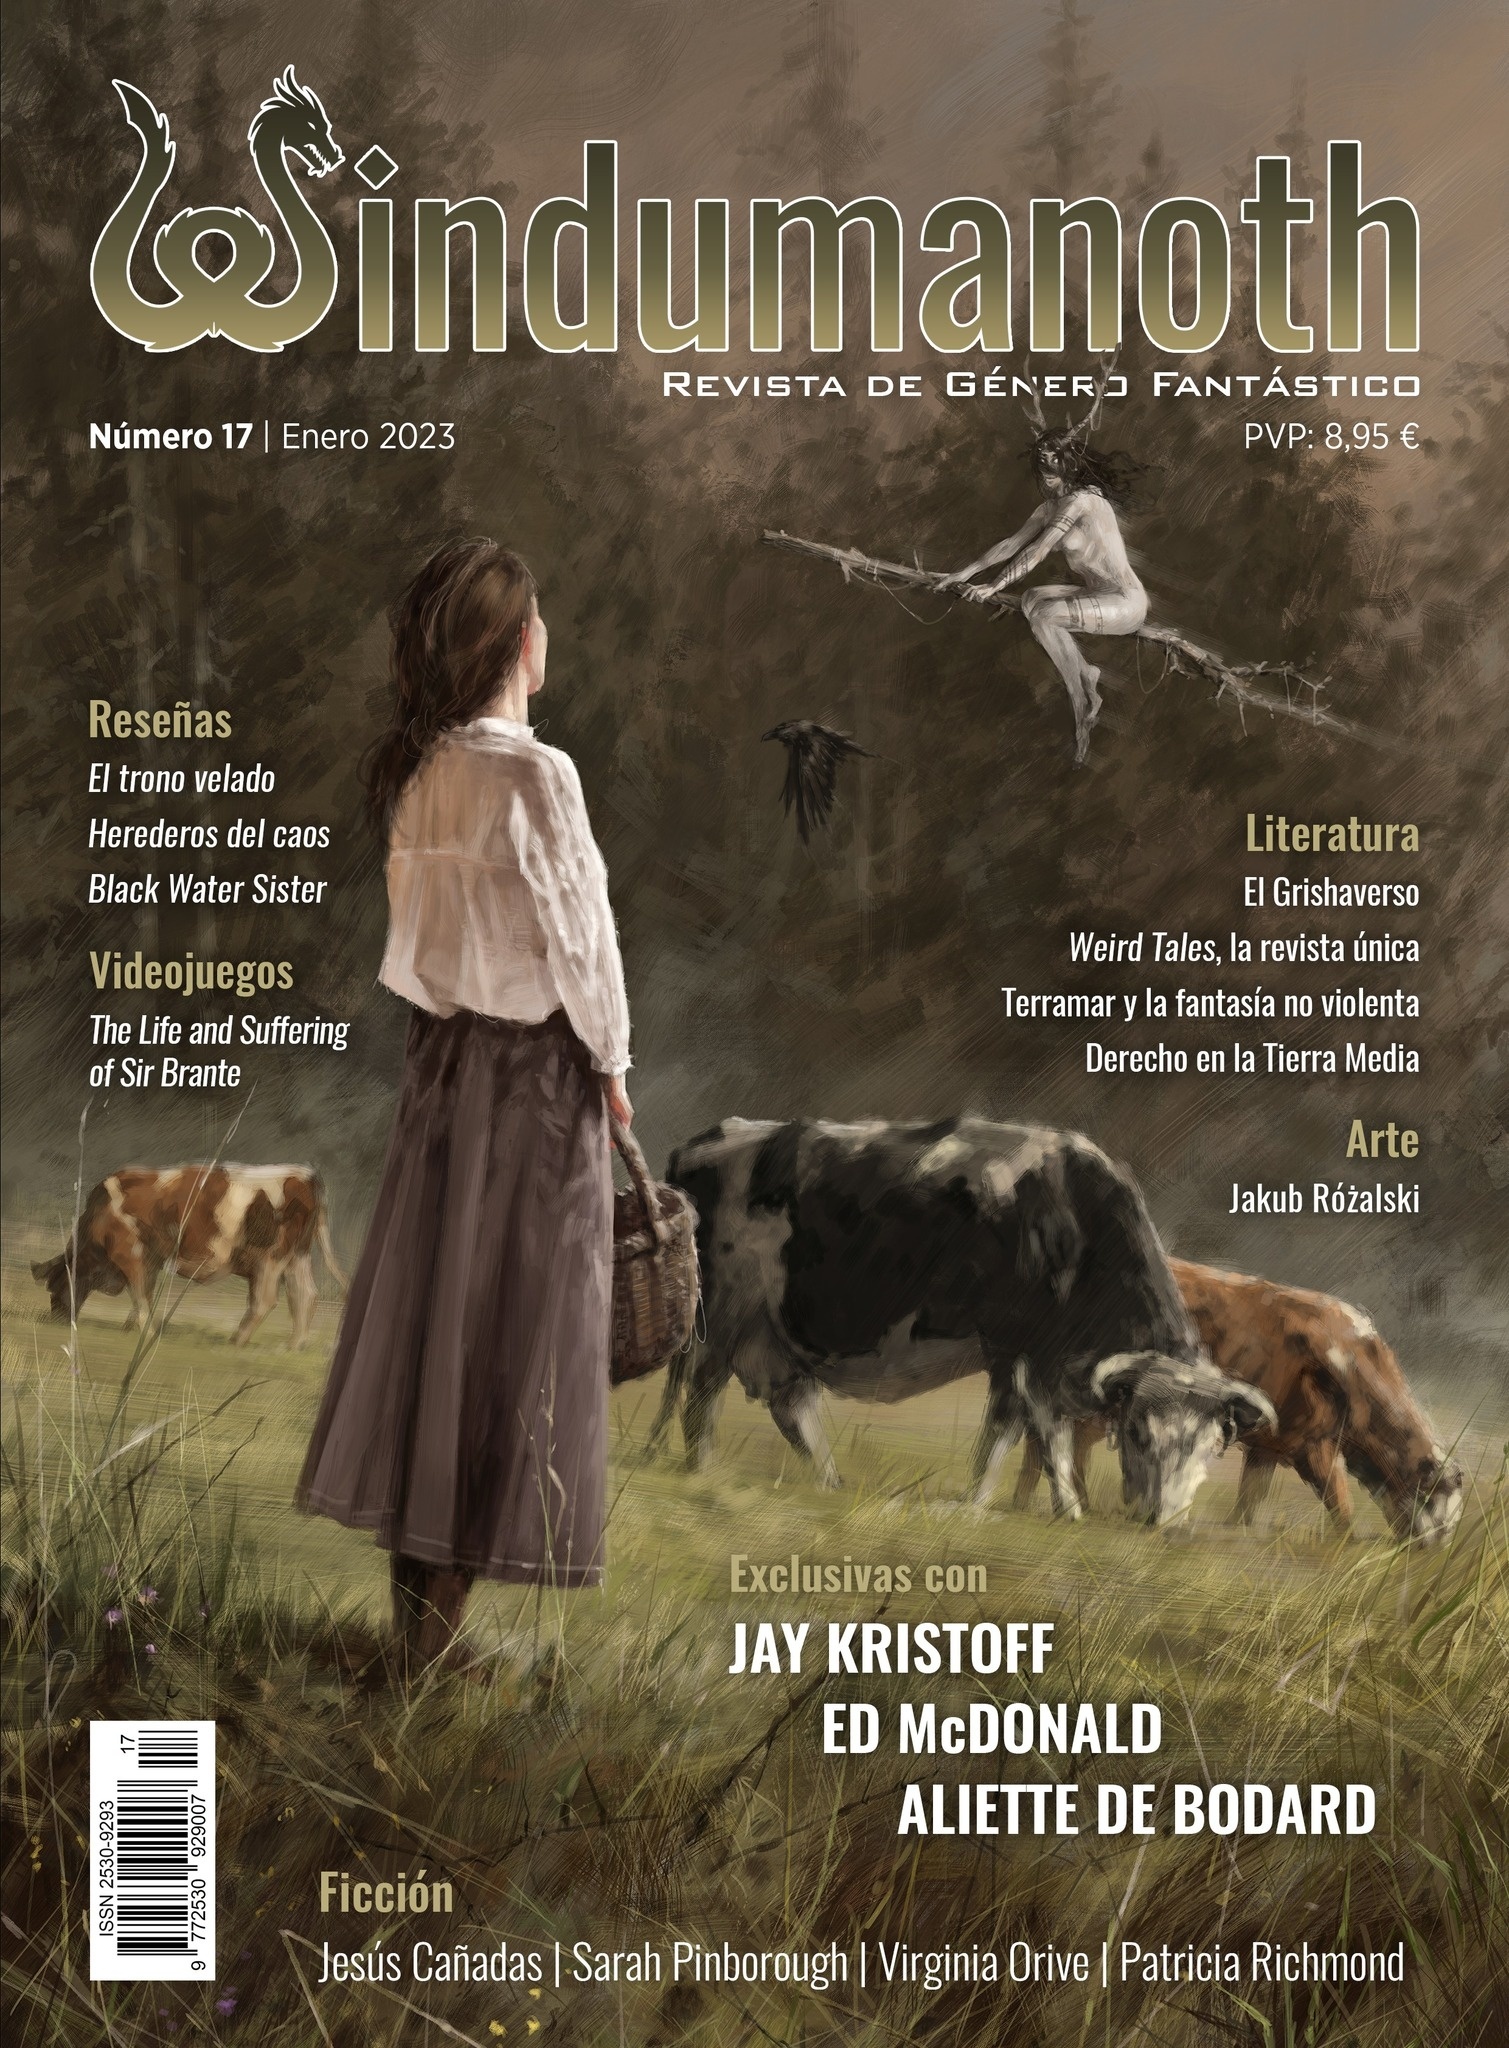 Windumanoth nº 17. Enero 2023 "Revista de género fantástico"